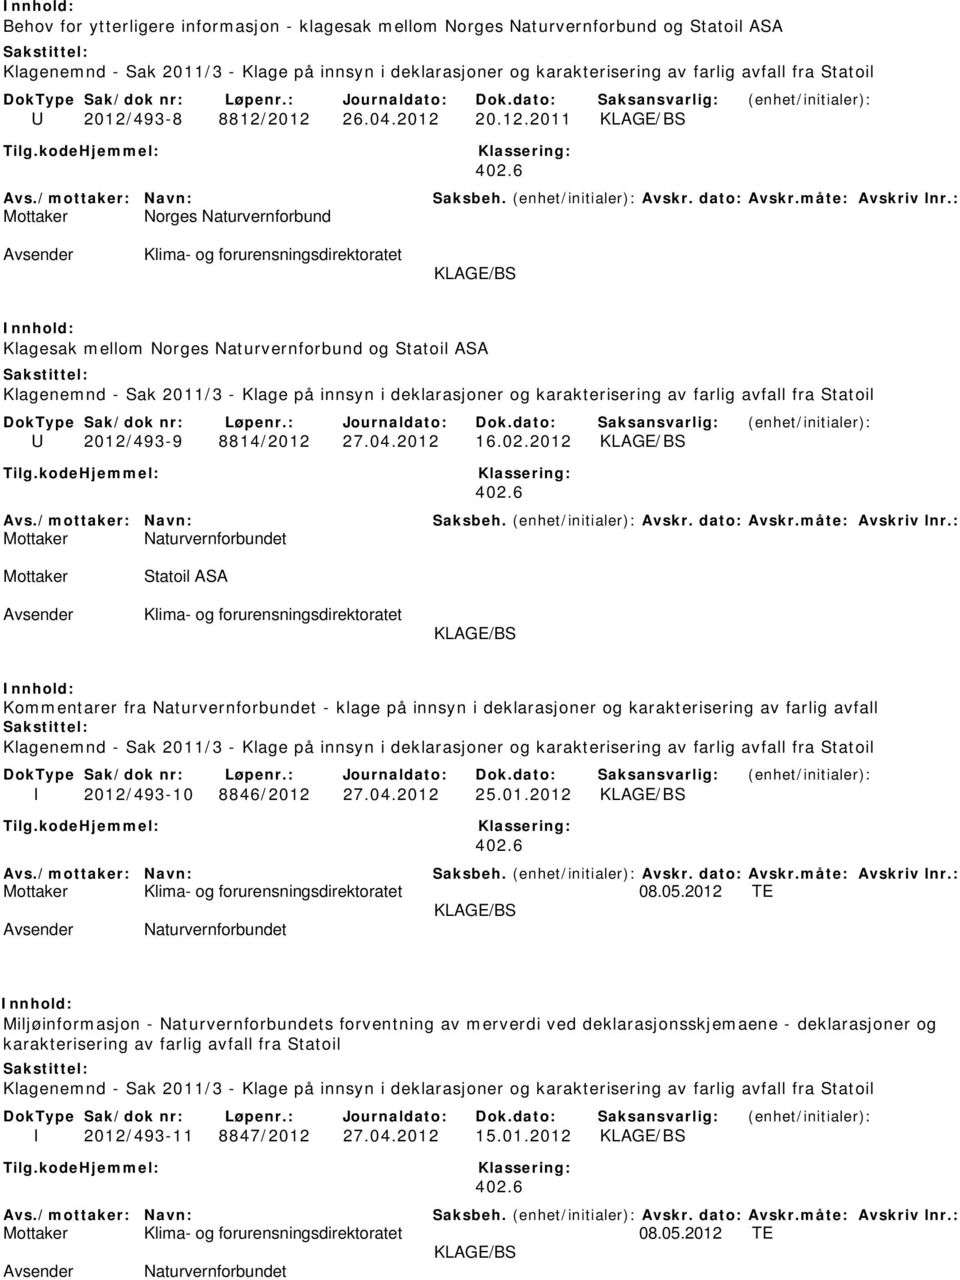 2012 Mottaker Statoil ASA Kommentarer fra Naturvernforbundet - klage på innsyn i deklarasjoner og karakterisering av farlig avfall I 2012/493-10 8846/2012 27.04.2012 25.01.2012 Mottaker 08.